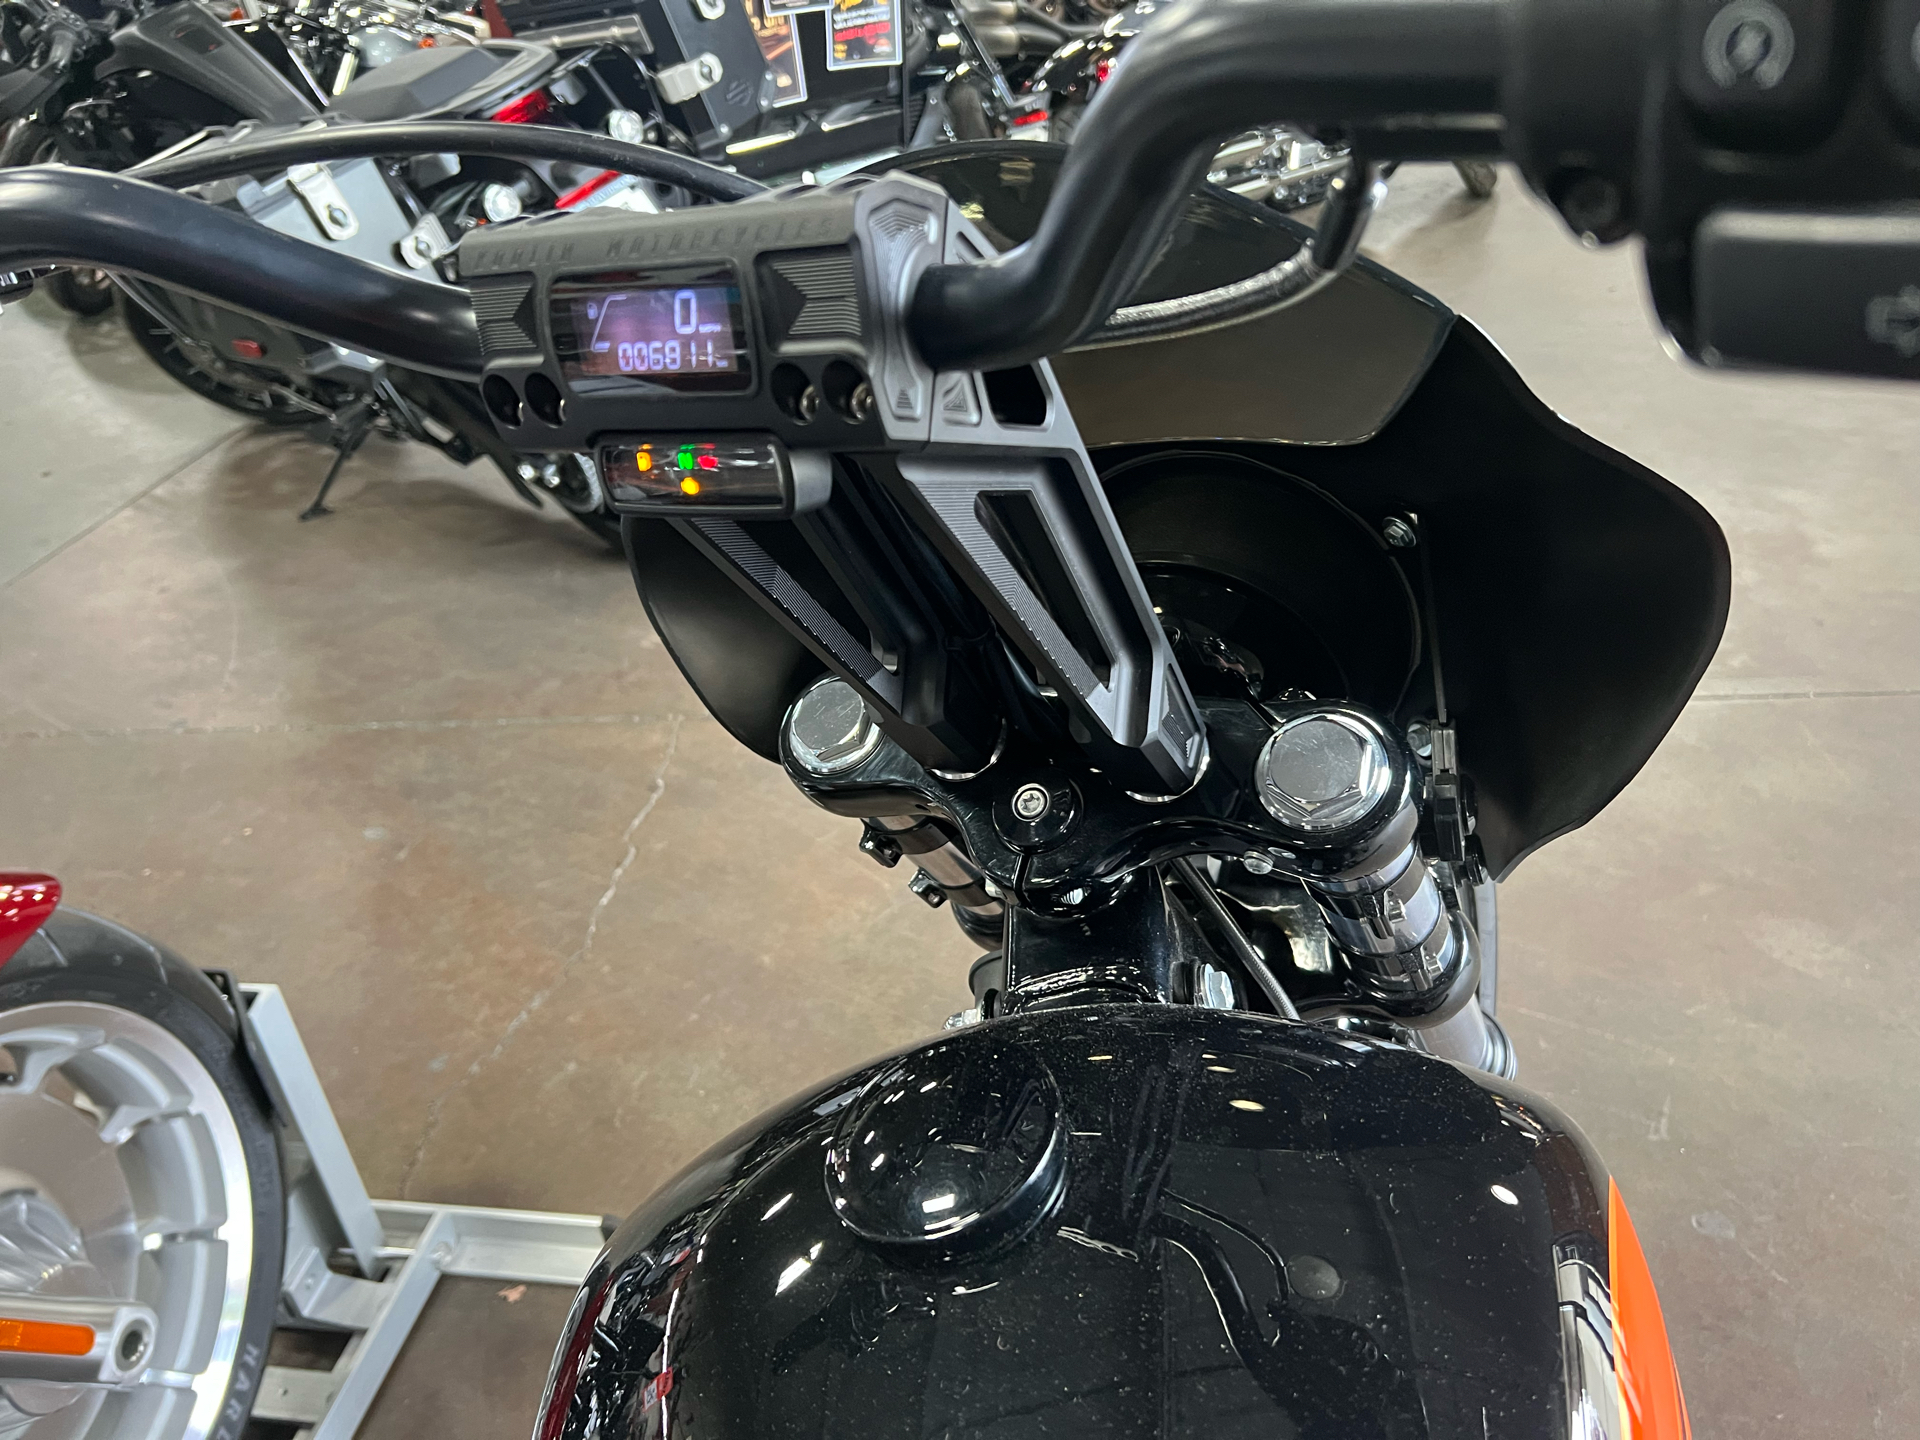 2019 Harley-Davidson Street Bob® in San Jose, California - Photo 15